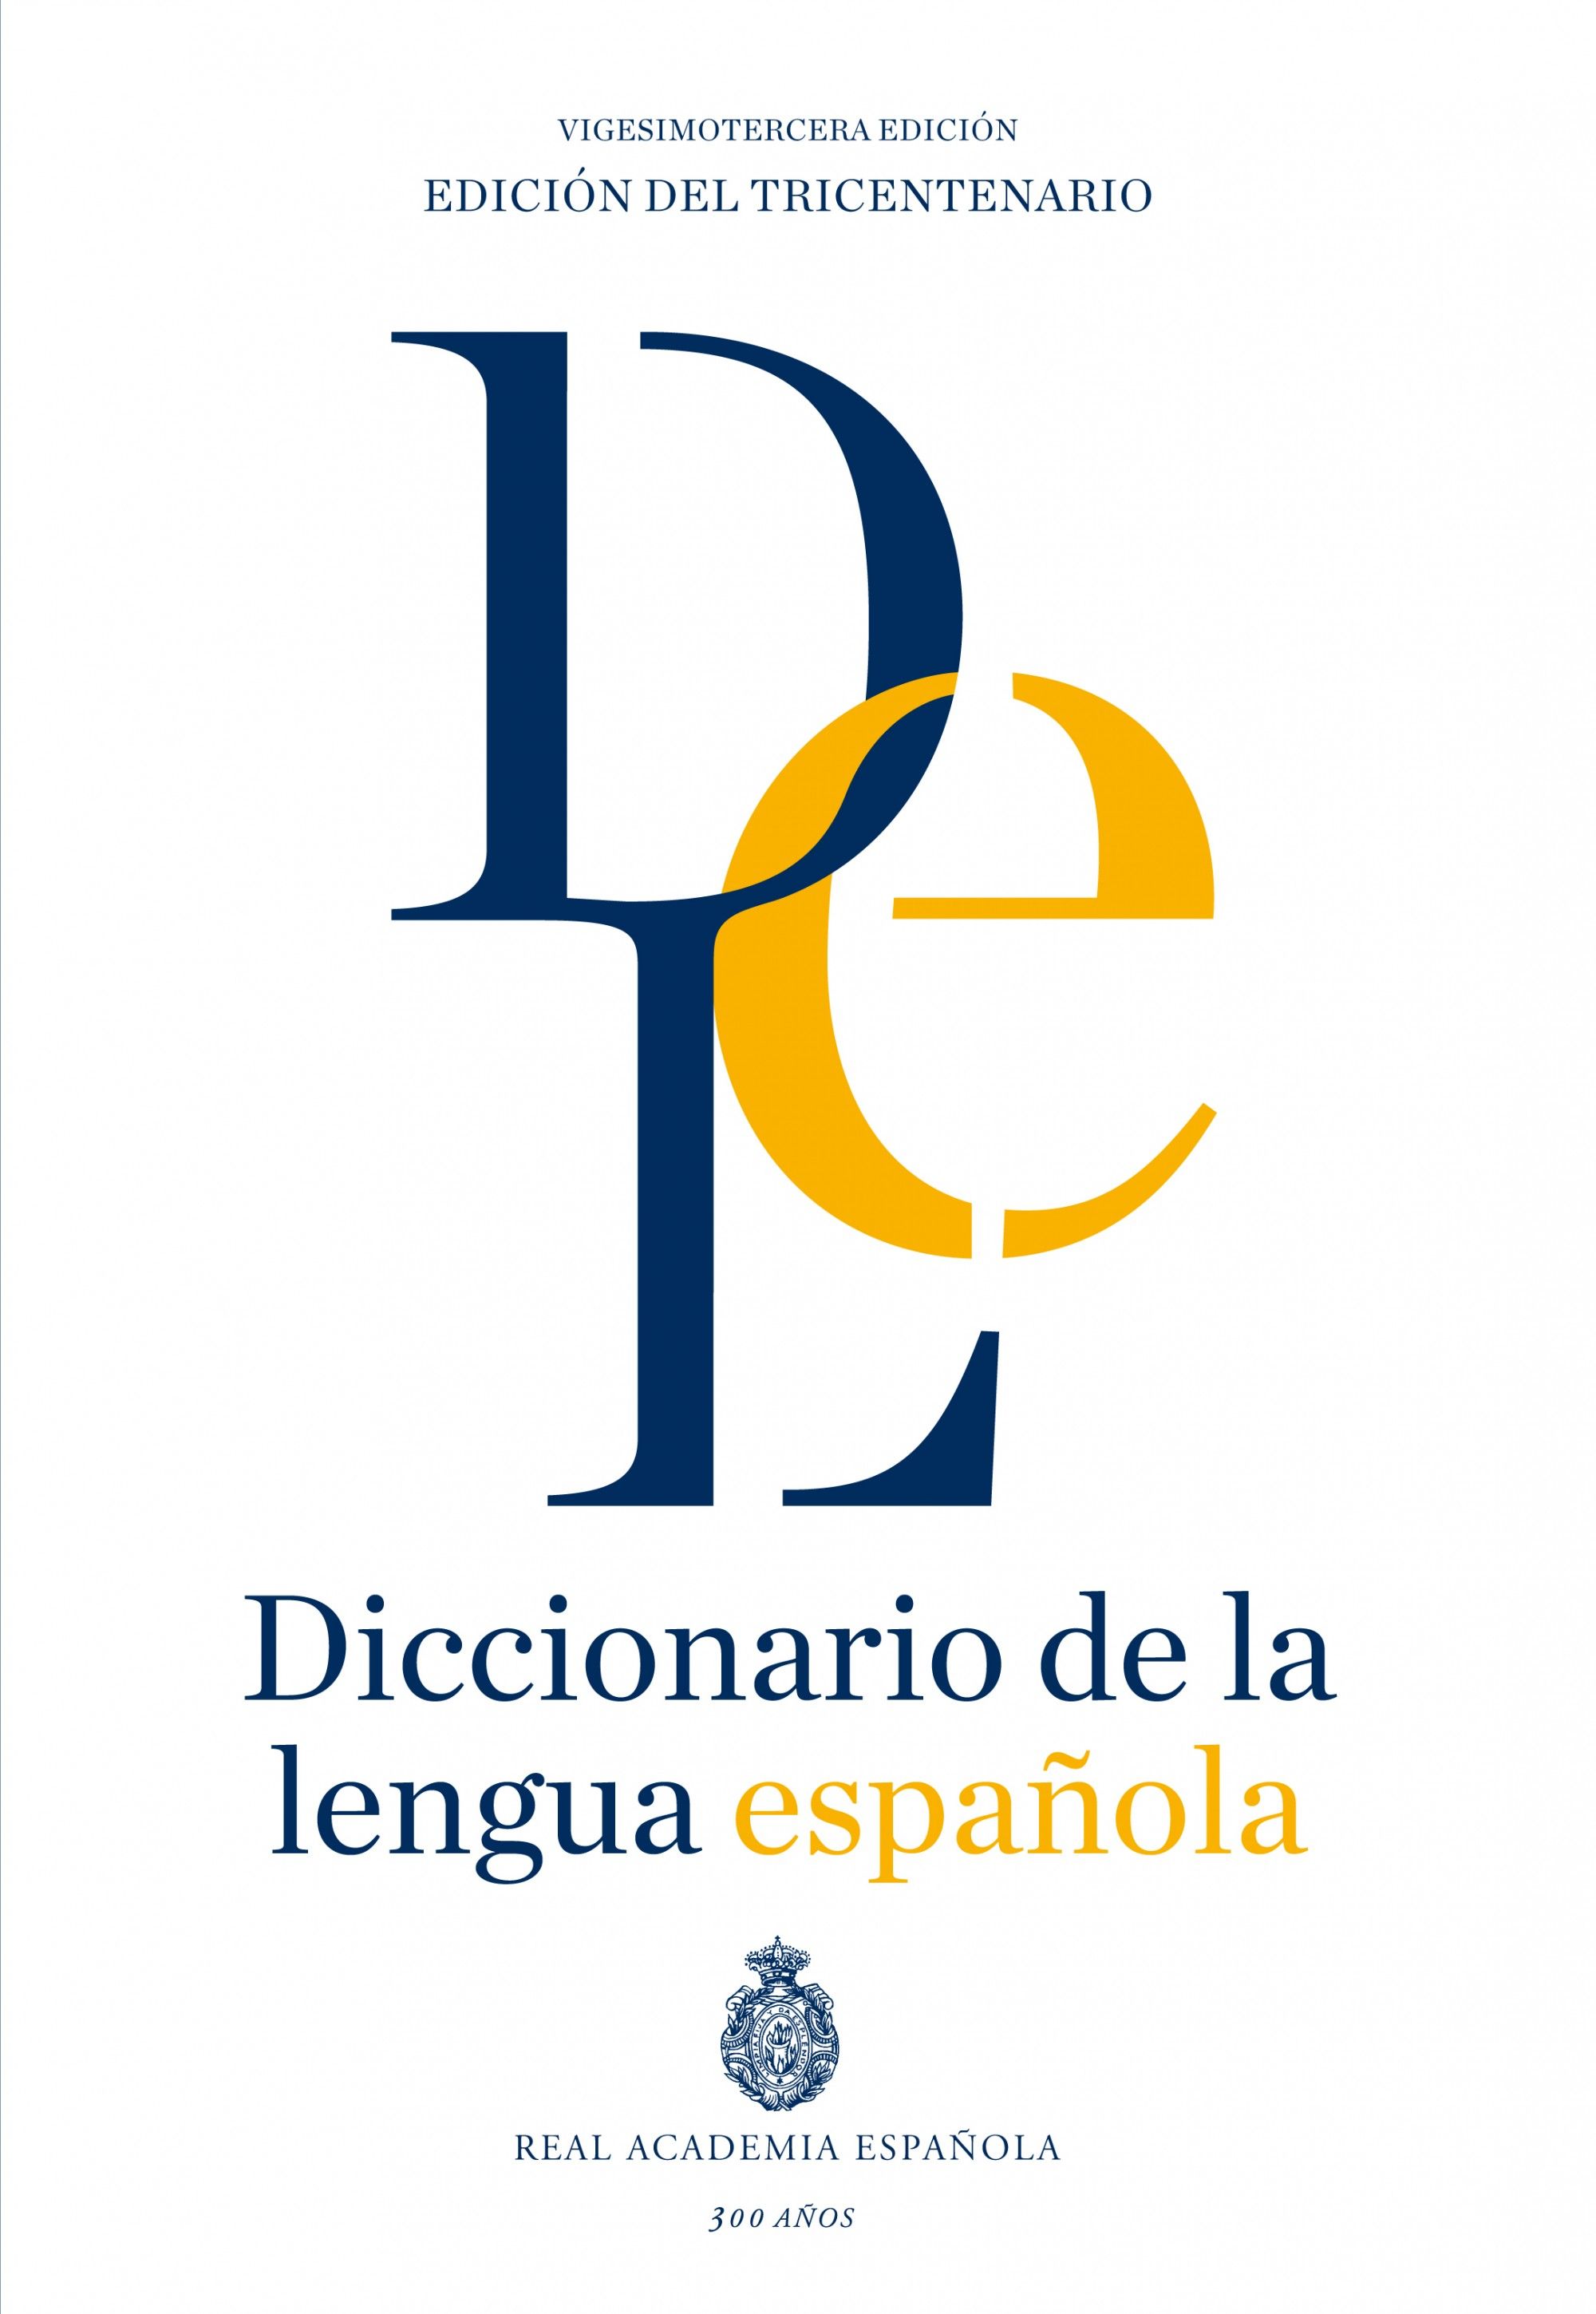 DICCIONARIO DE LA LENGUA ESPAÑOLA. VIGESIMOTERCERA EDICIÓN. VERSIÓN NORMAL. 